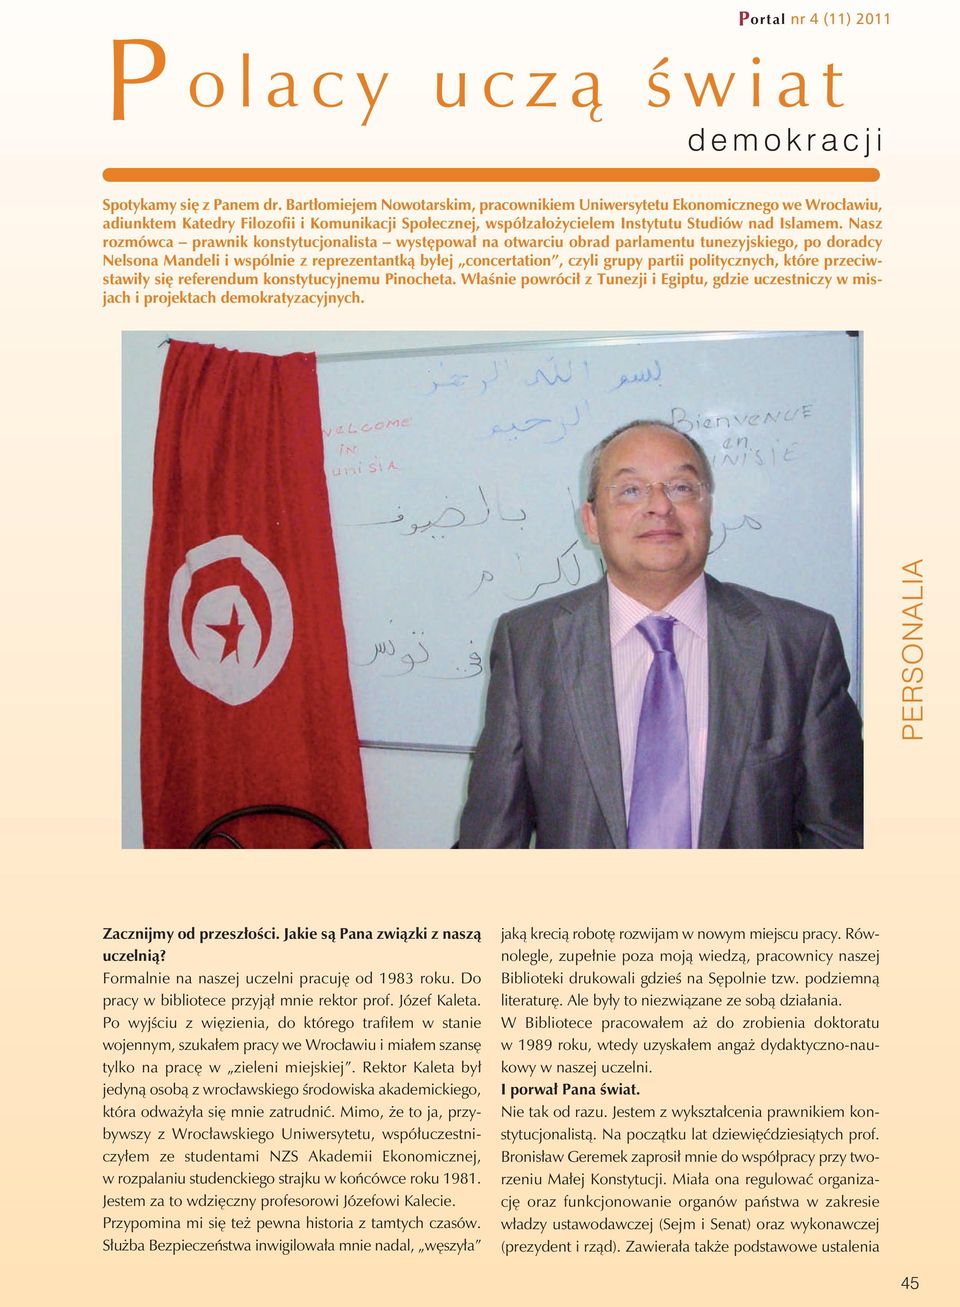 Nasz rozmówca prawnik konstytucjonalista występował na otwarciu obrad parlamentu tunezyjskiego, po doradcy Nelsona Mandeli i wspólnie z reprezentantką byłej concertation, czyli grupy partii